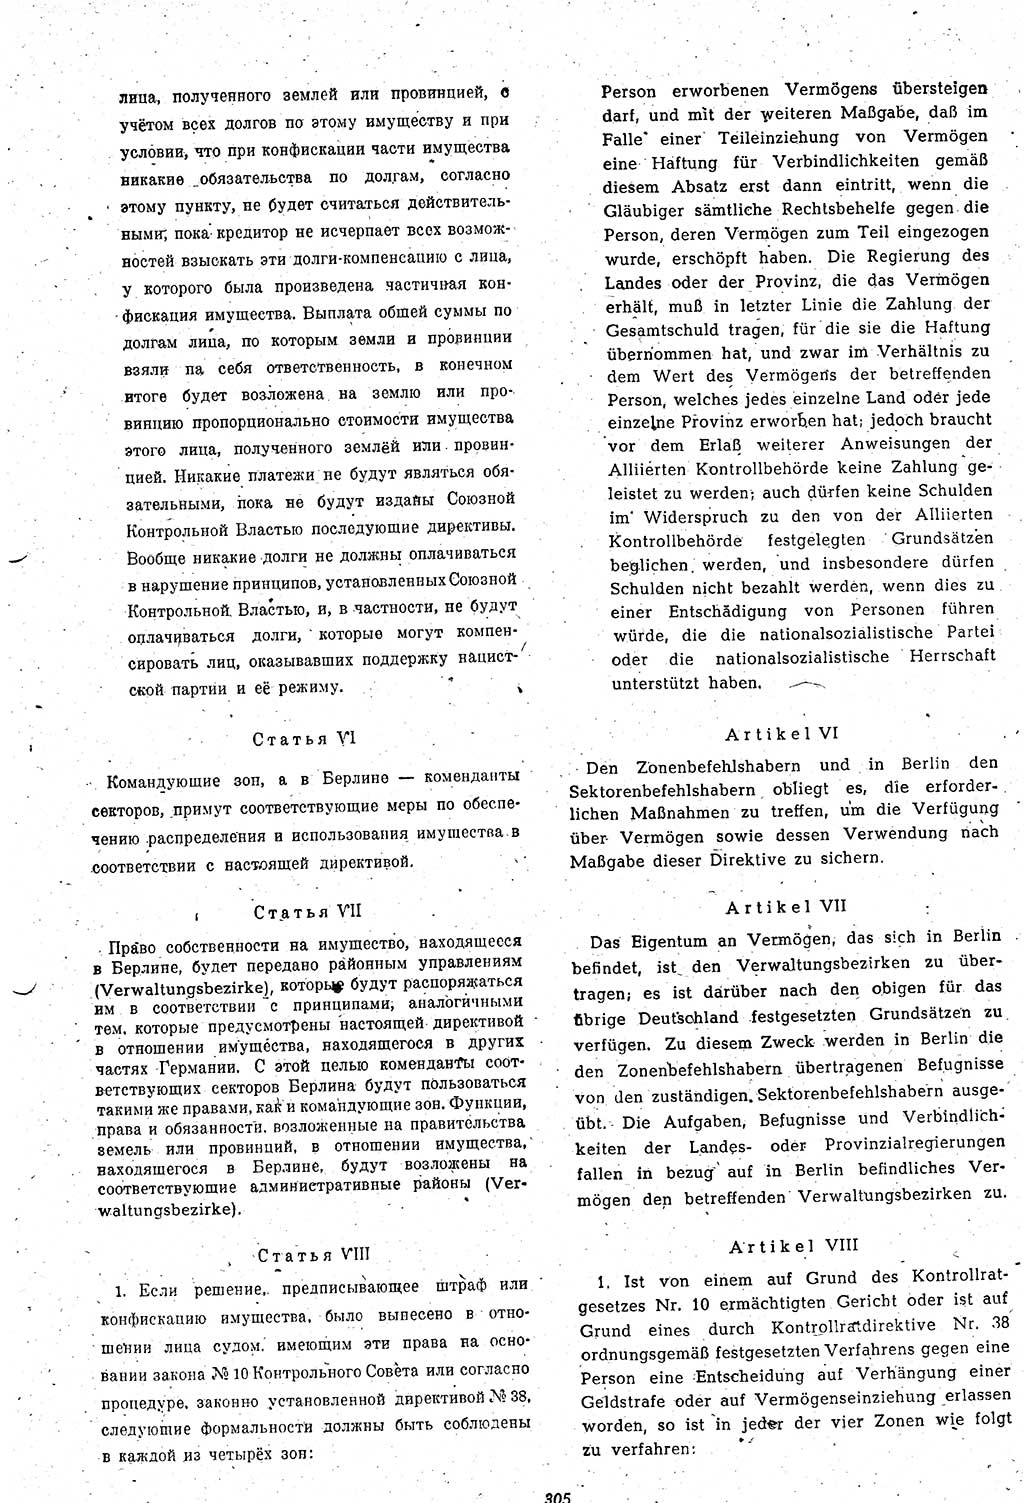 Amtsblatt des Kontrollrats (ABlKR) in Deutschland 1948, Seite 305/2 (ABlKR Dtl. 1948, S. 305/2)